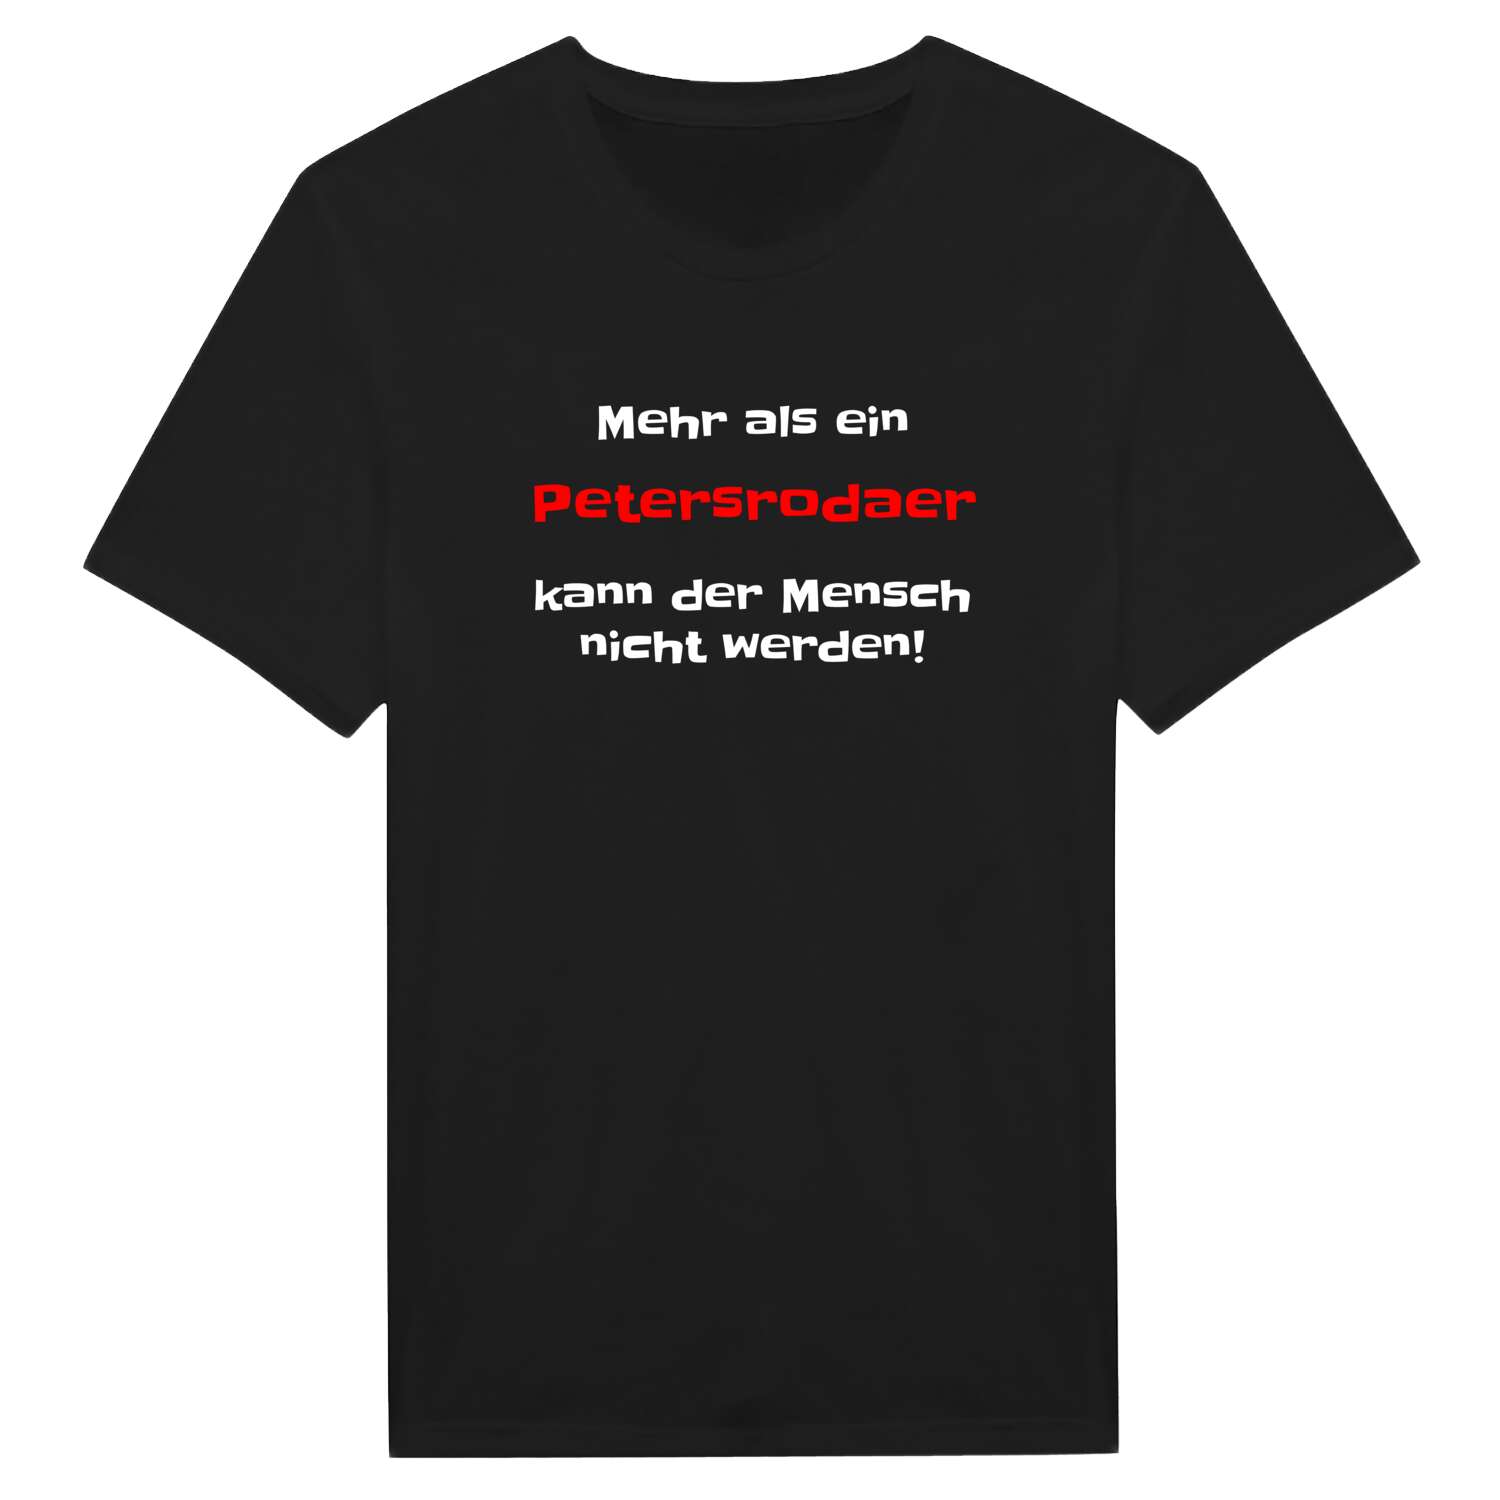 Petersroda T-Shirt »Mehr als ein«